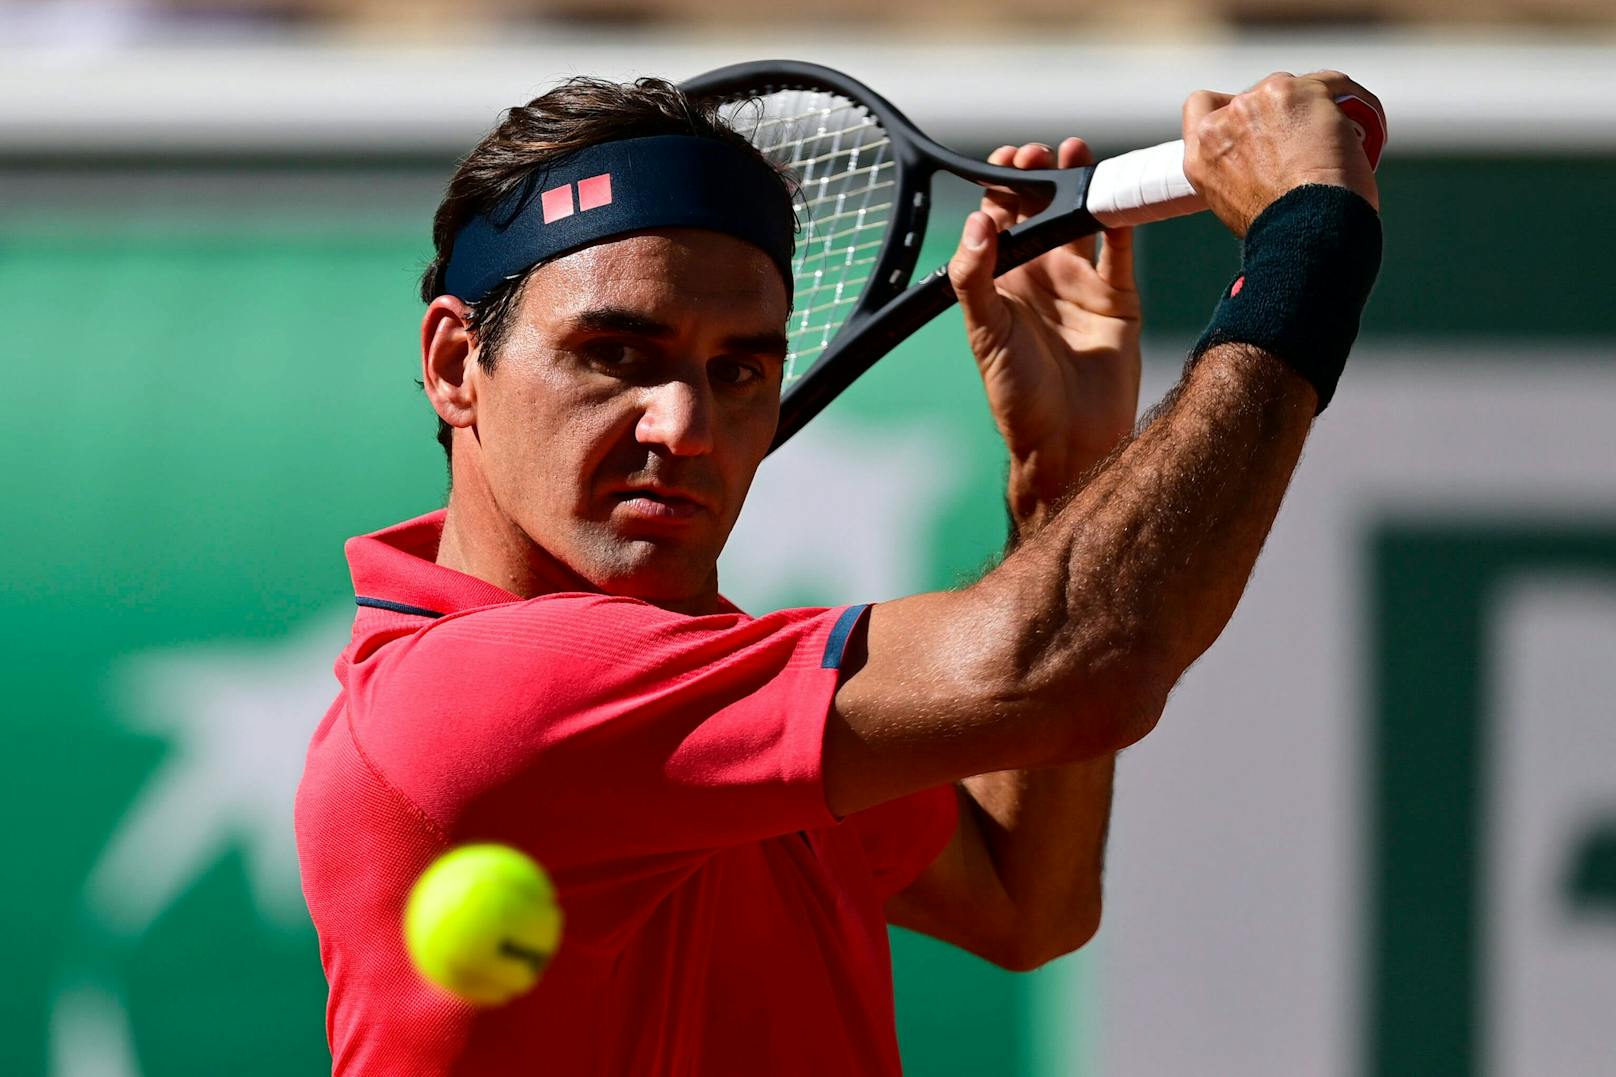 Tennis-Ikone Federer spricht über Comeback-Pläne